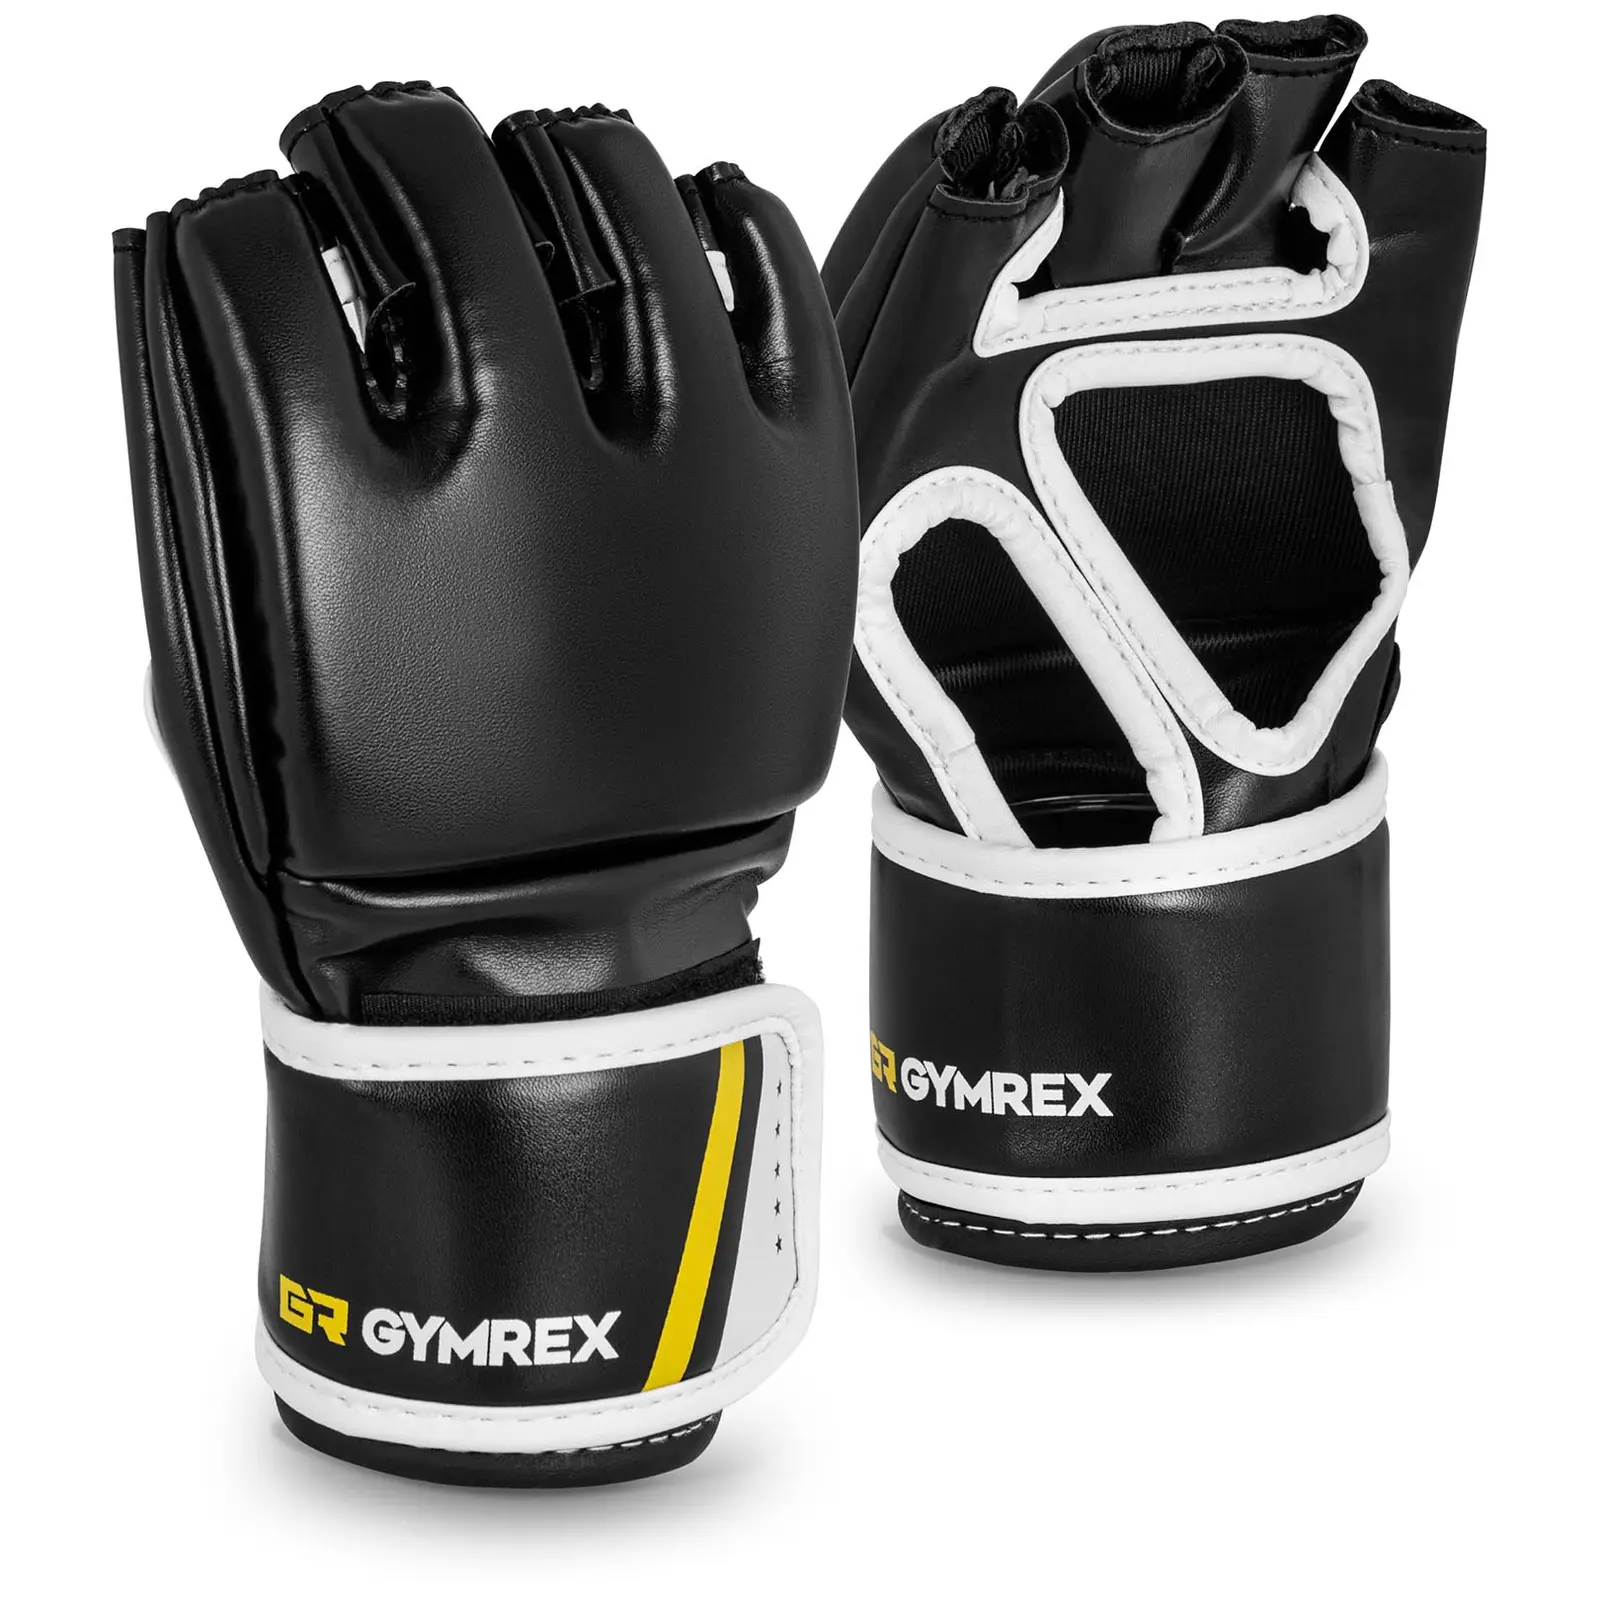 MMA Handschuhe - Gr. S/M - schwarz - ohne Daumen